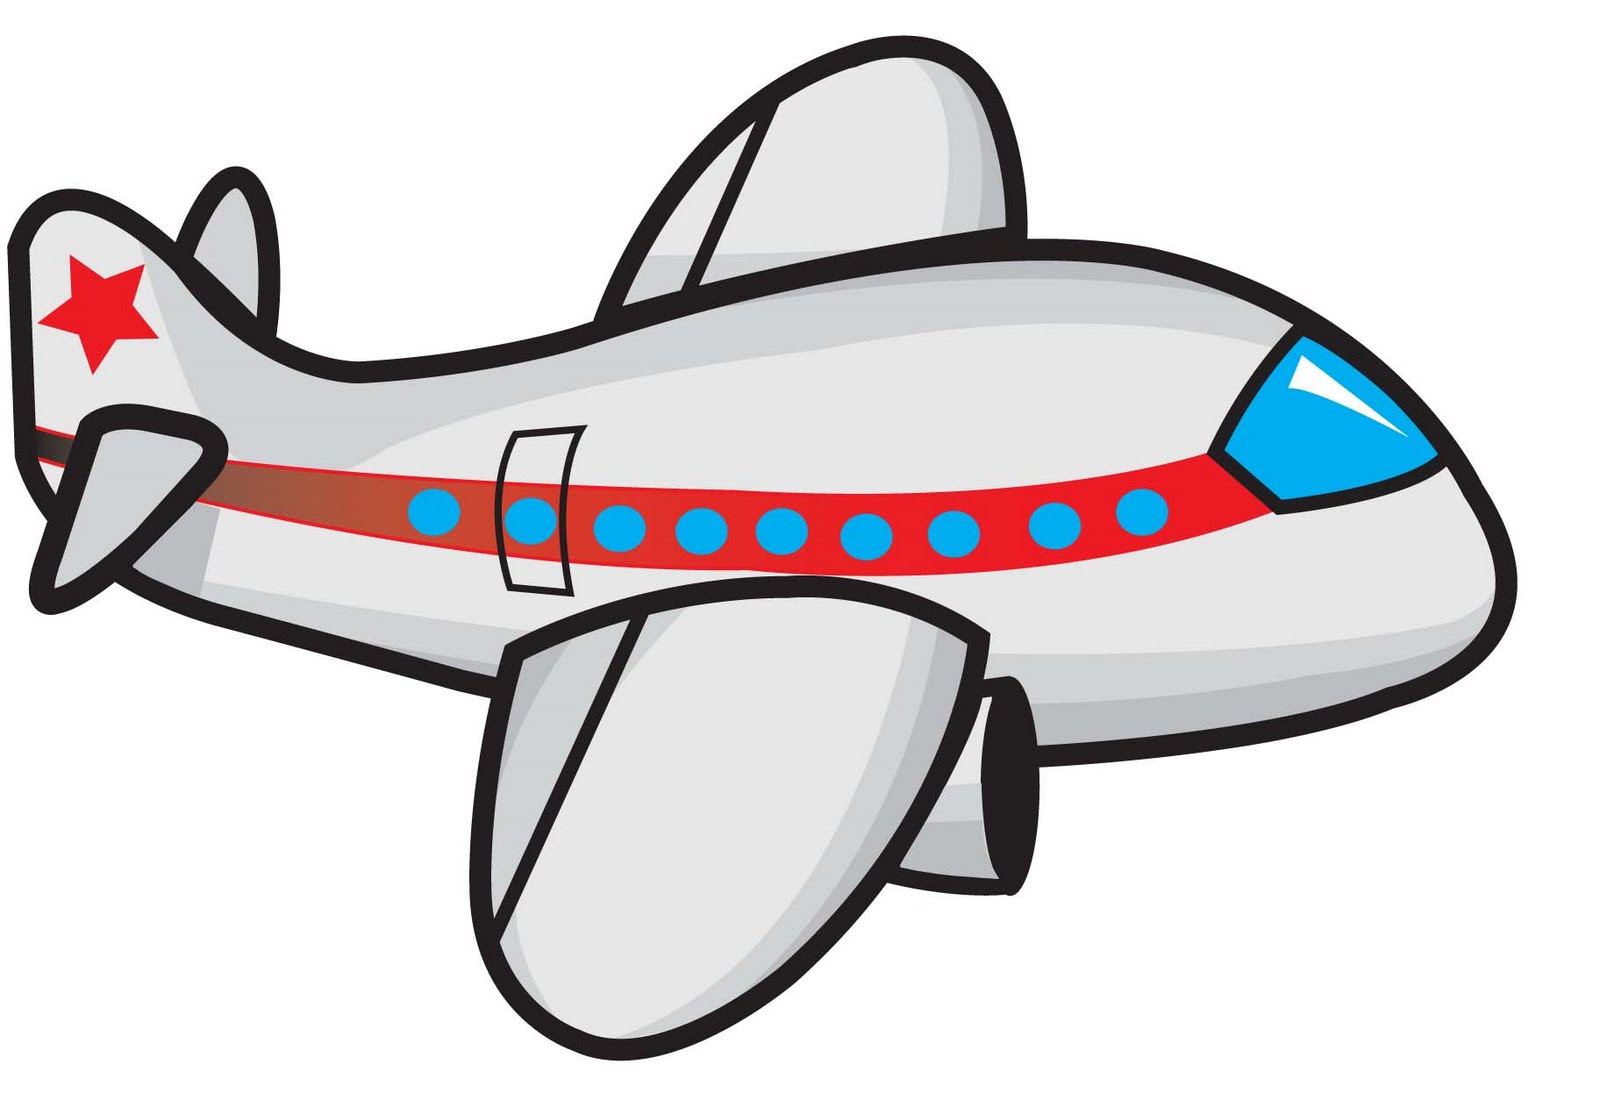 Cartoon Airplane Clipart.